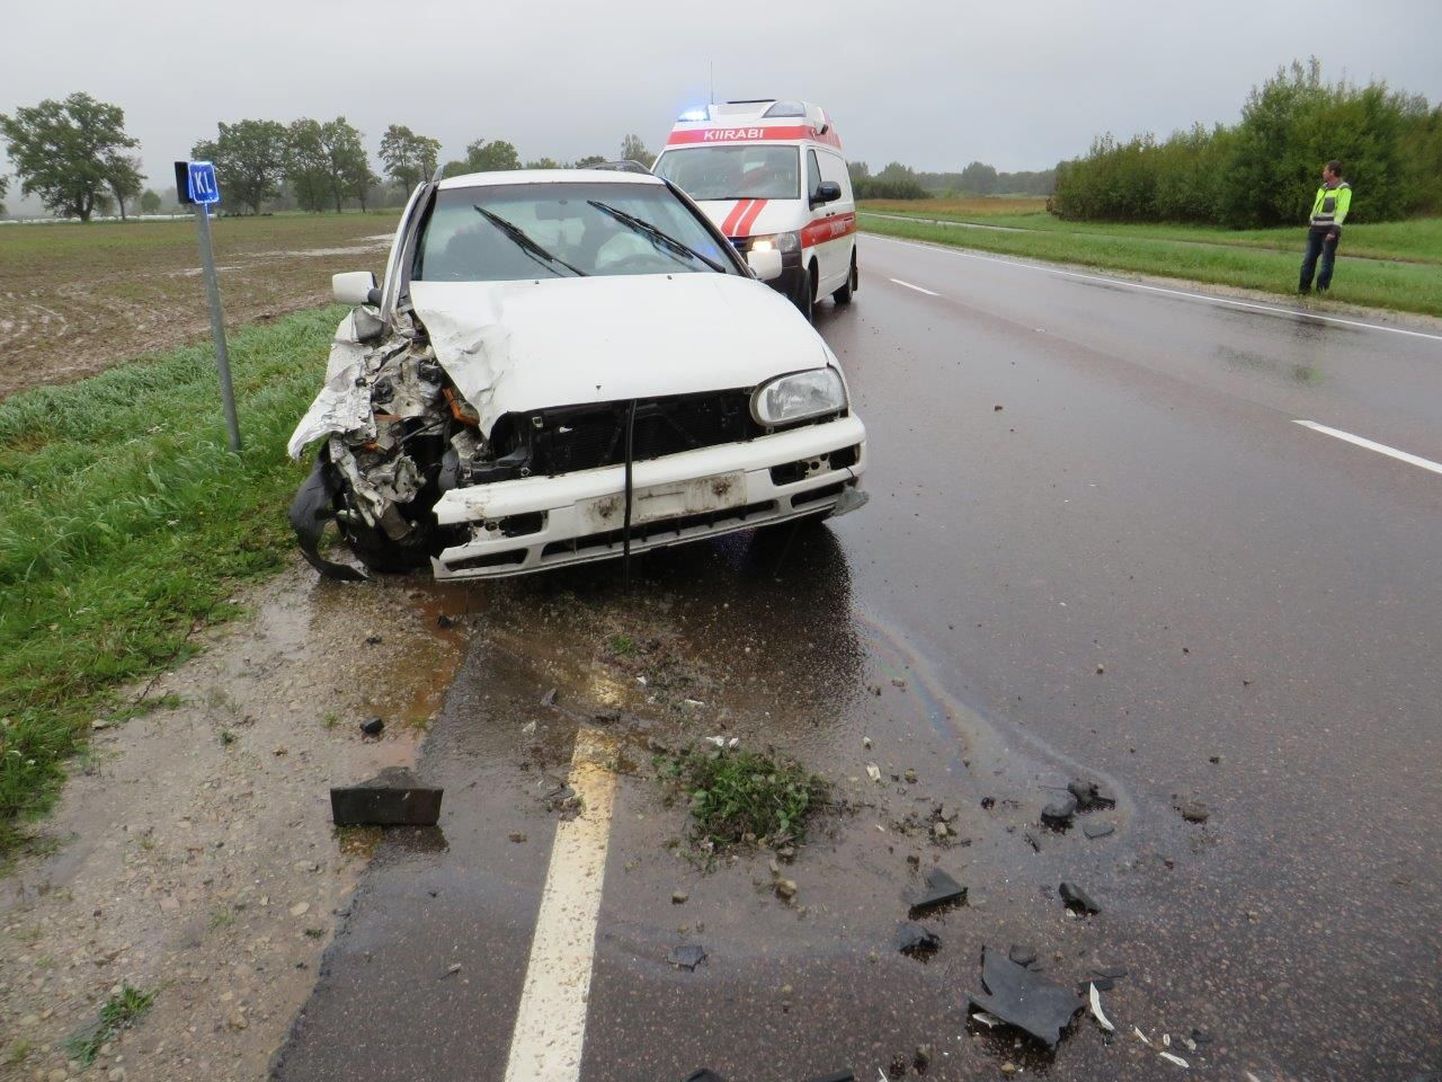 Eile kella 16.15 paiku toimus liiklusõnnetus Valgamaal Jõhvi-Tartu-Valga maantee 215. kilomeetril.